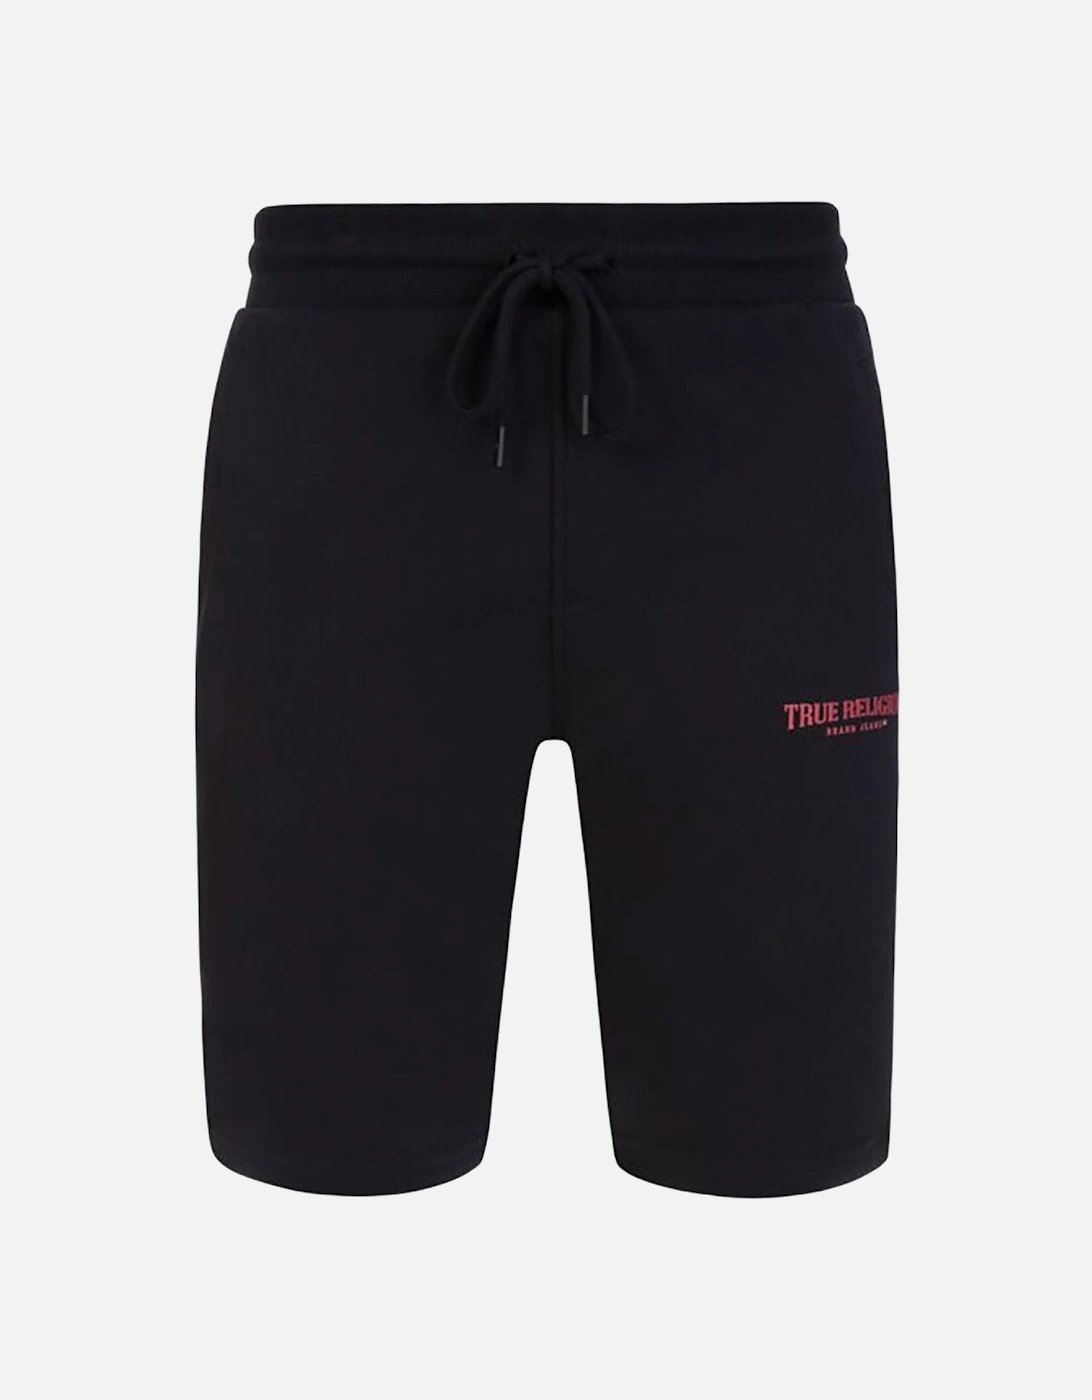 Welt Pockets Shorts Black, 5 of 4